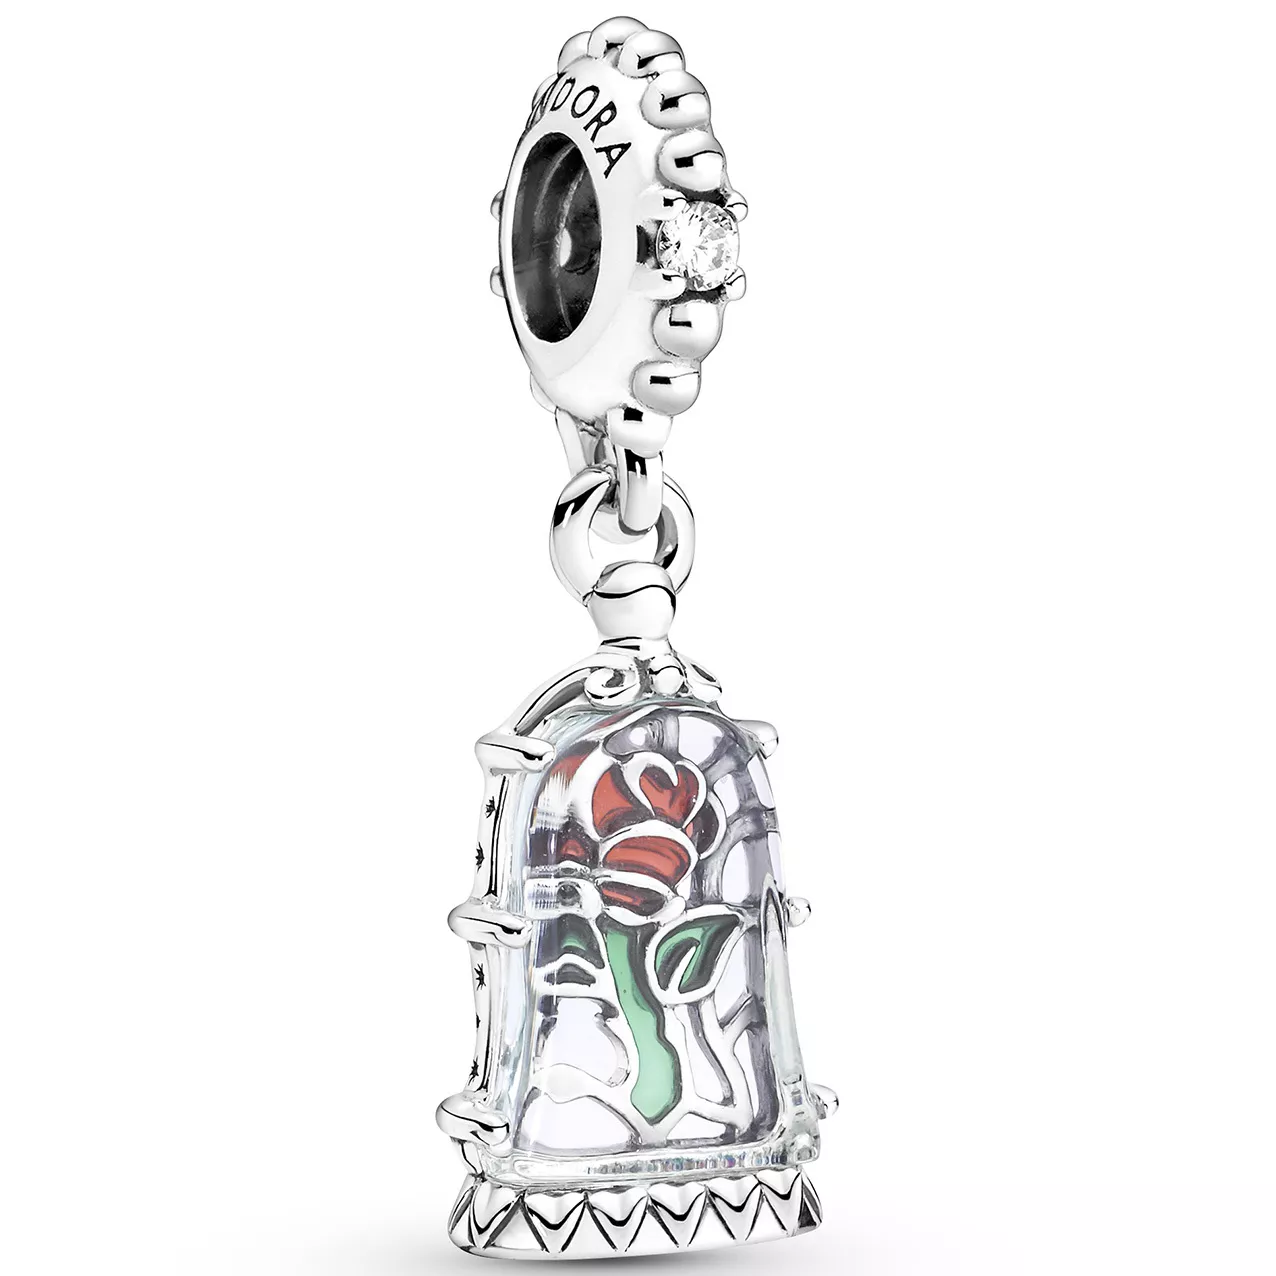 Pandora Disney 790024C01 Hangbedel Beauty and the Beast Enchanted Rose zilver-zirconia-muranoglas-emaille